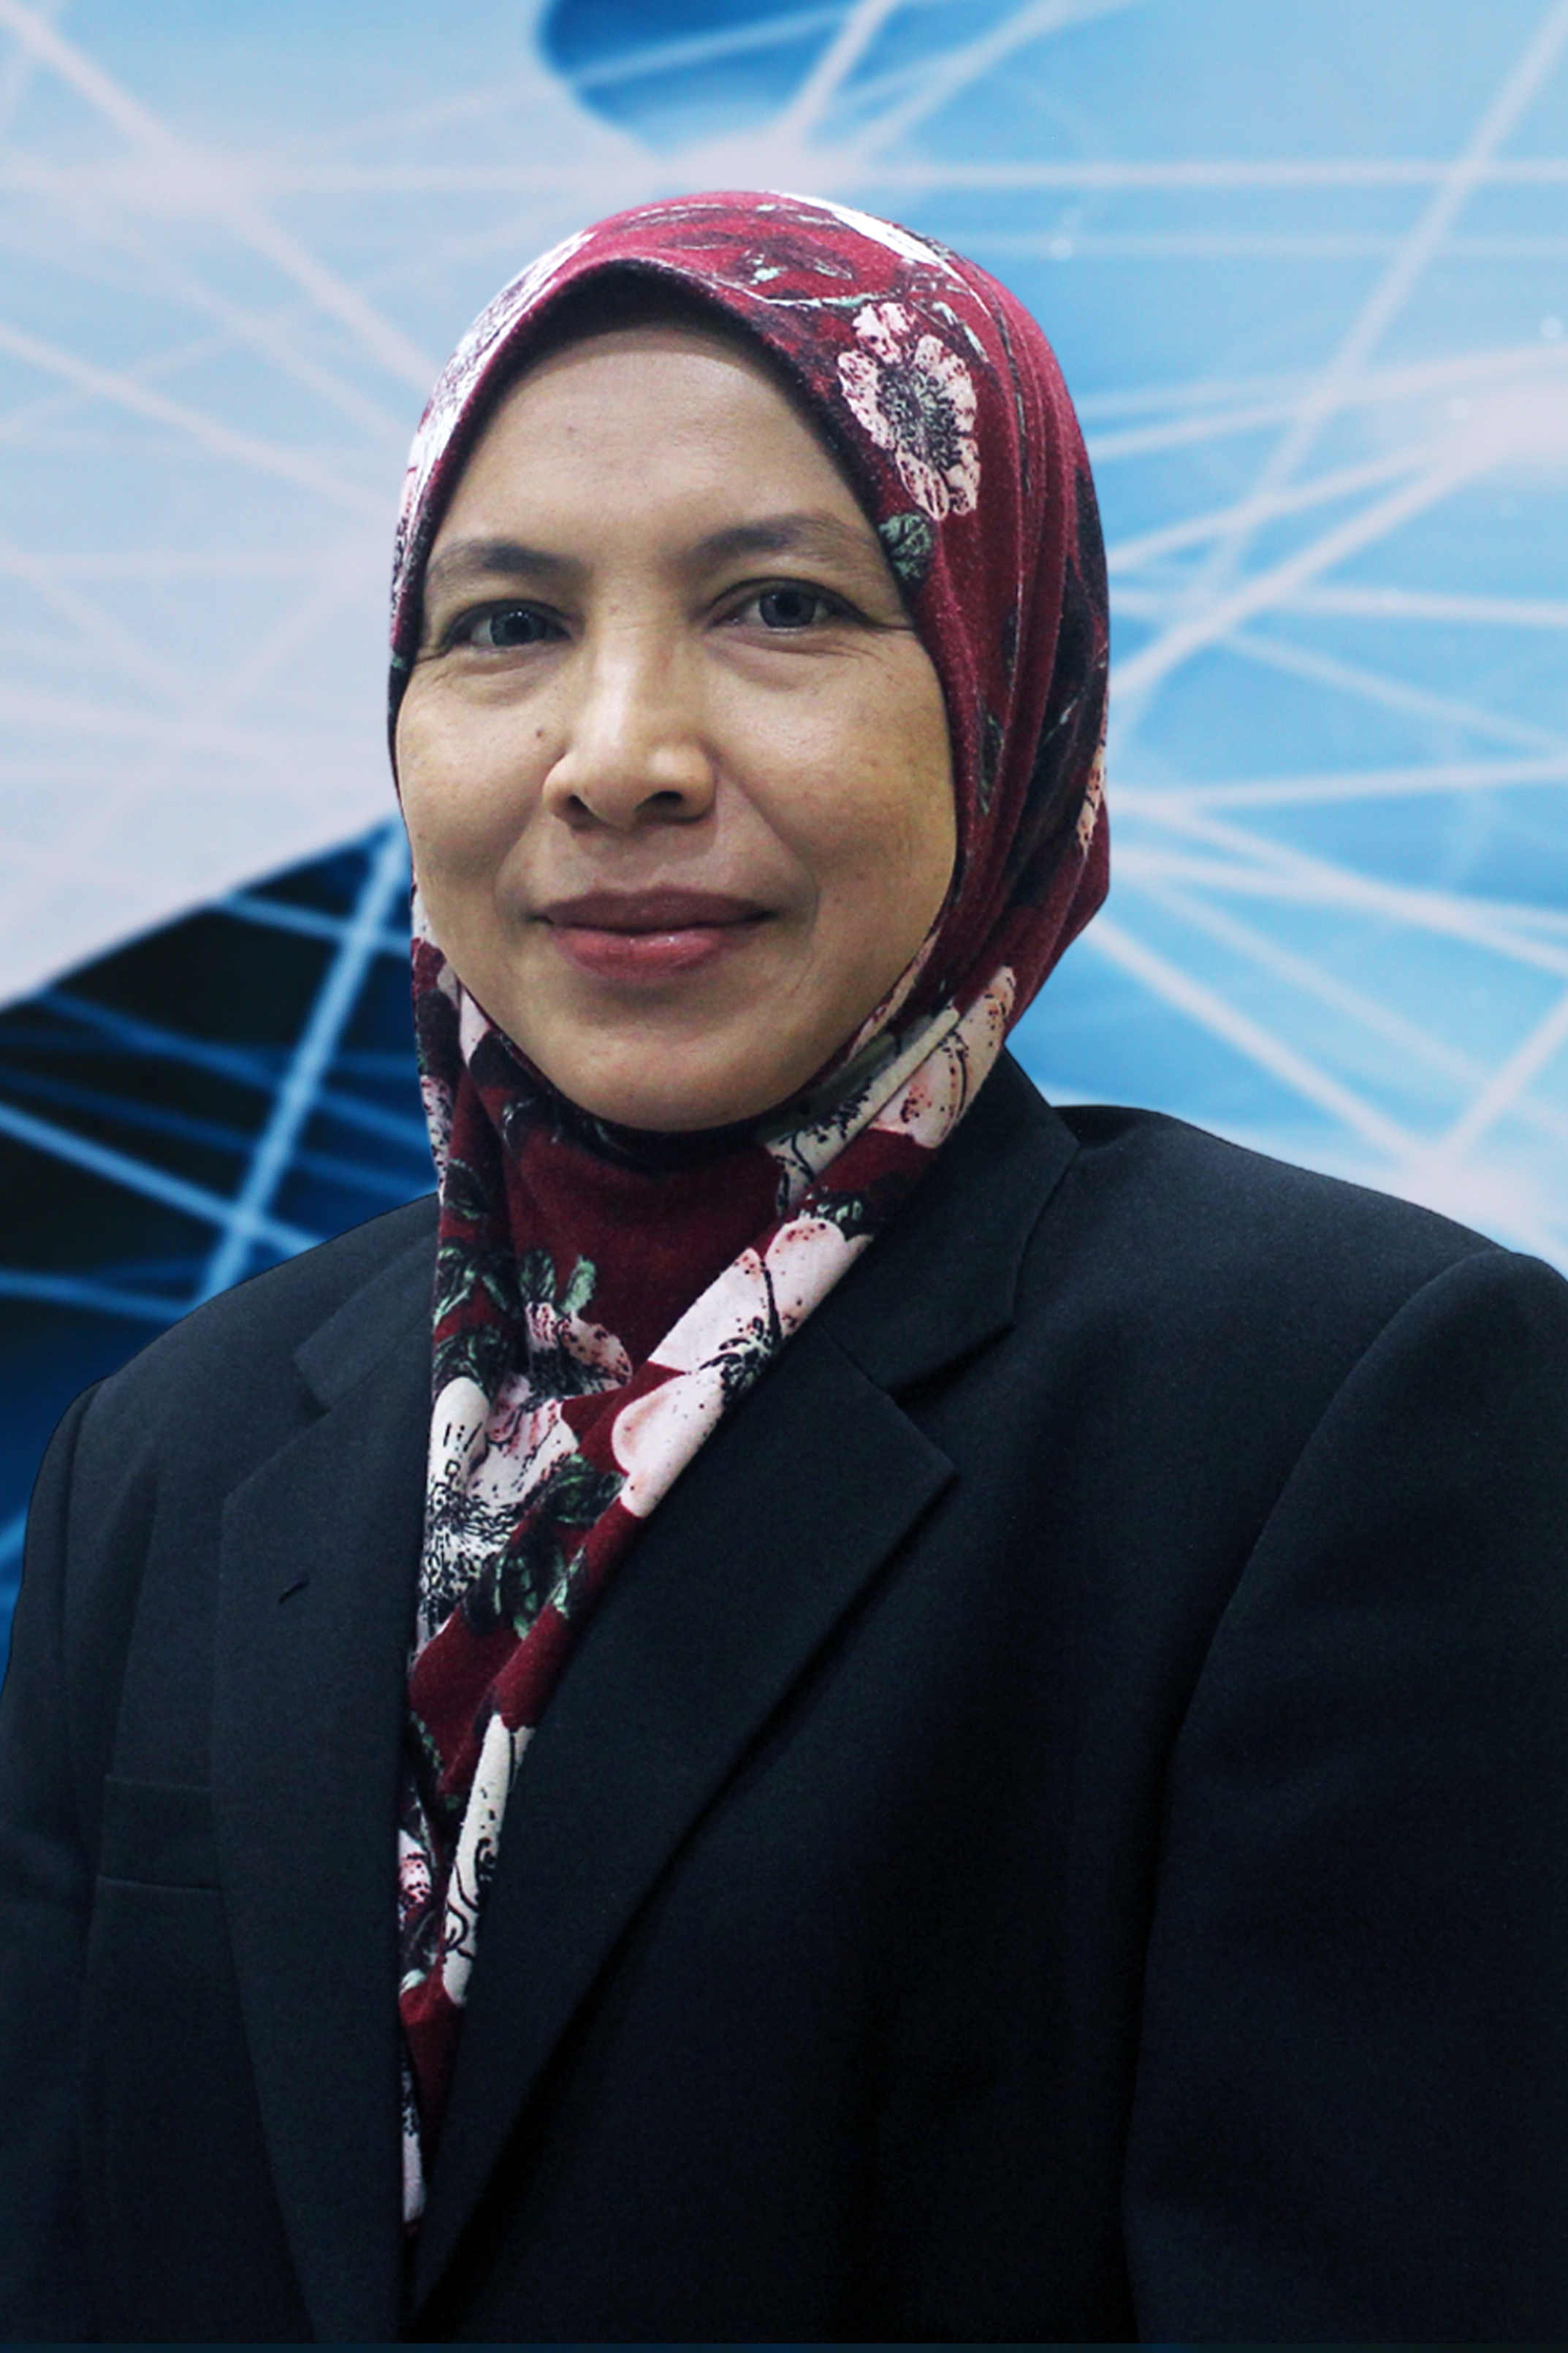 Assoc. Prof. Dr. Rozita Abdul Mutalib